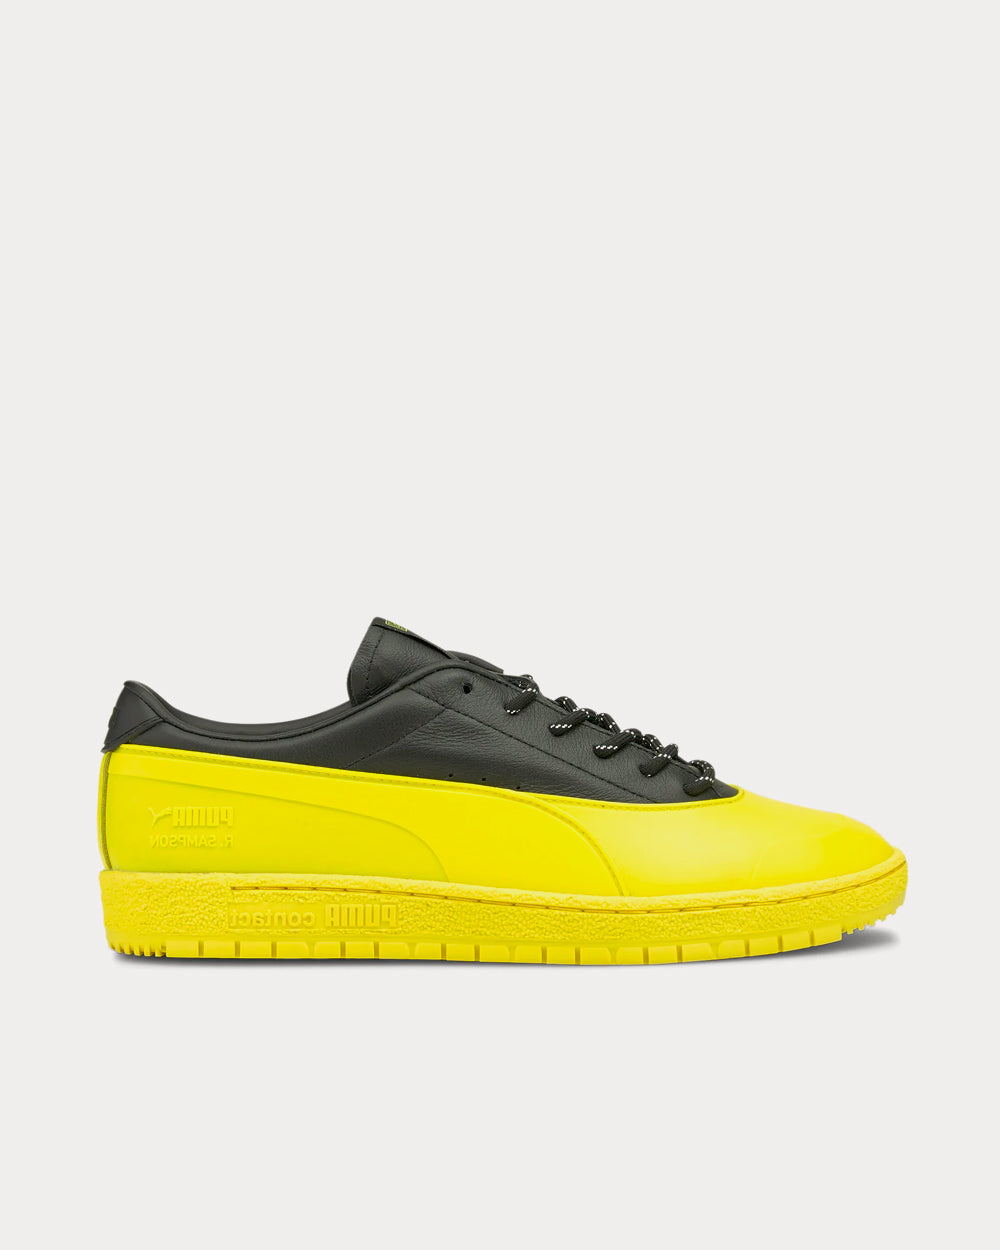 Puma x Maison Kitsuné - Ralph Sampson 70 Black / Yellow Low Top Sneakers